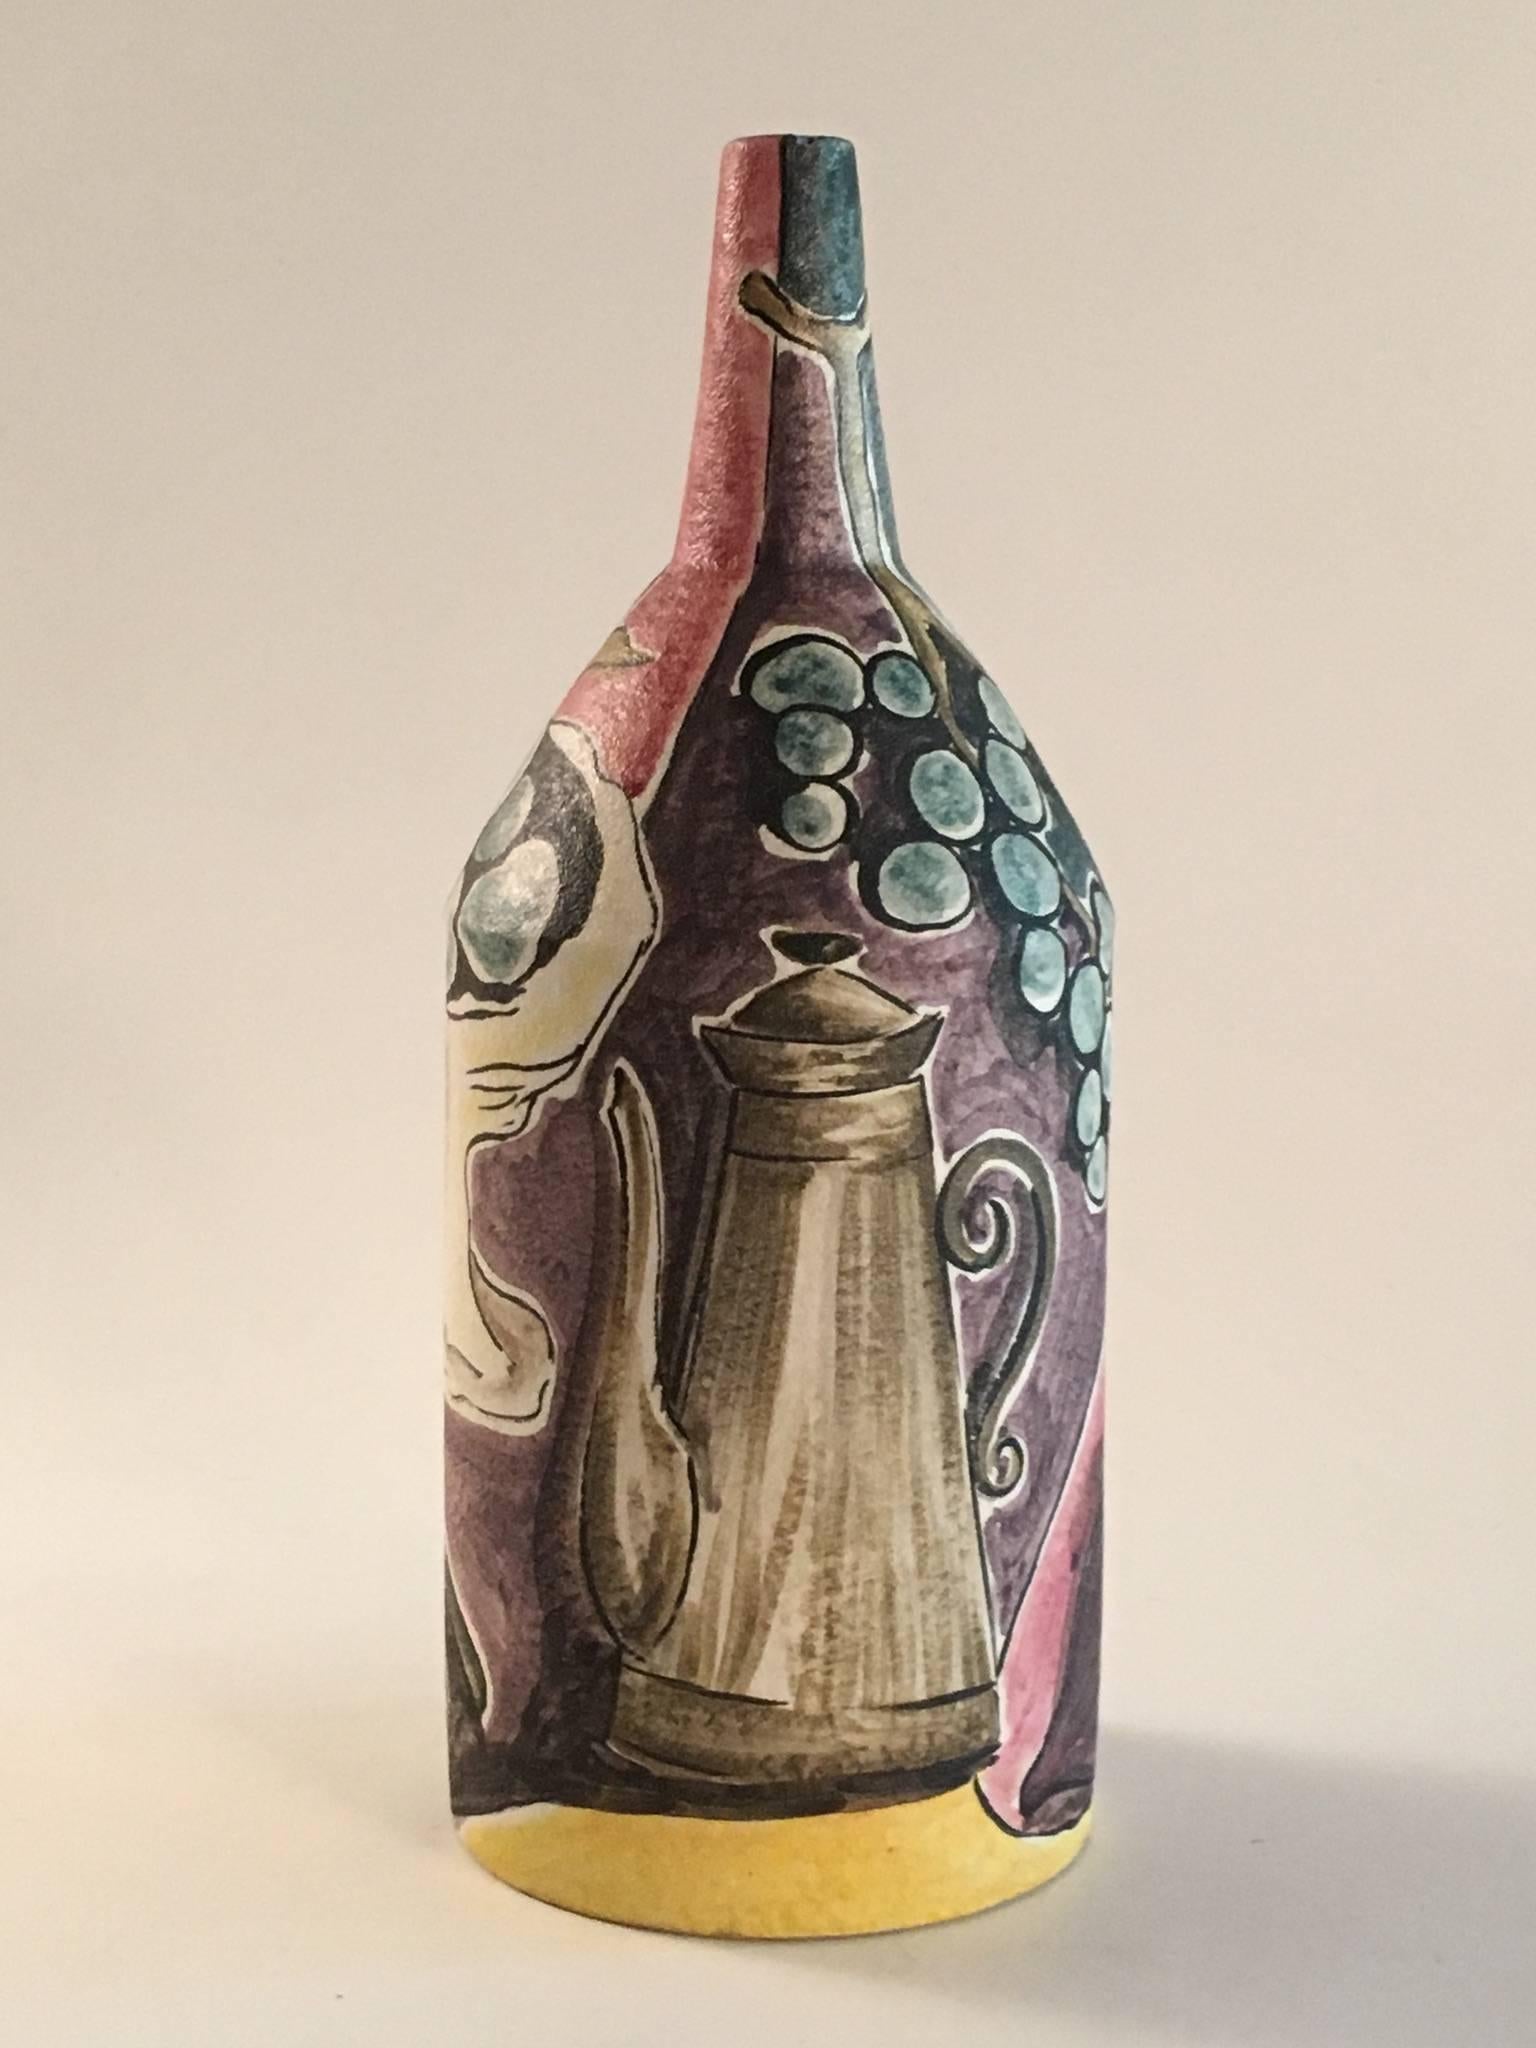 Un beau et inhabituel grand vase en forme de bouteille par le maître potier italien Marcello Fantoni. Décorée d'une nature morte continue sur table avec une cafetière, un bol de raisins, une bouteille de vin et des fruits. Fini dans une glaçure